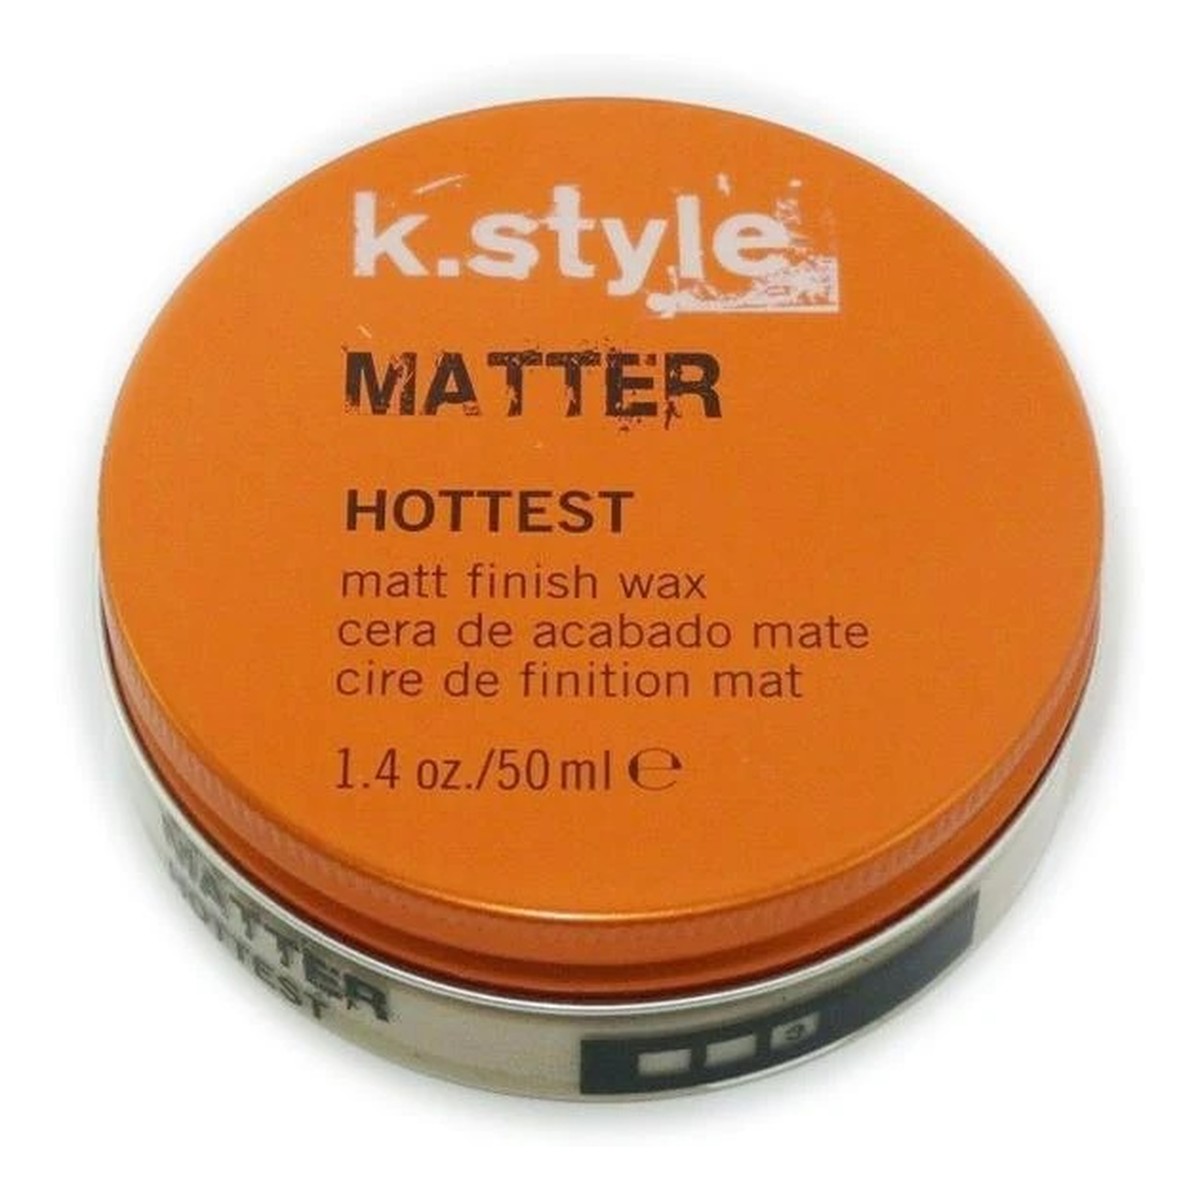 K.style matter matt finish wax elastyczny matujący wosk do stylizacji włosów